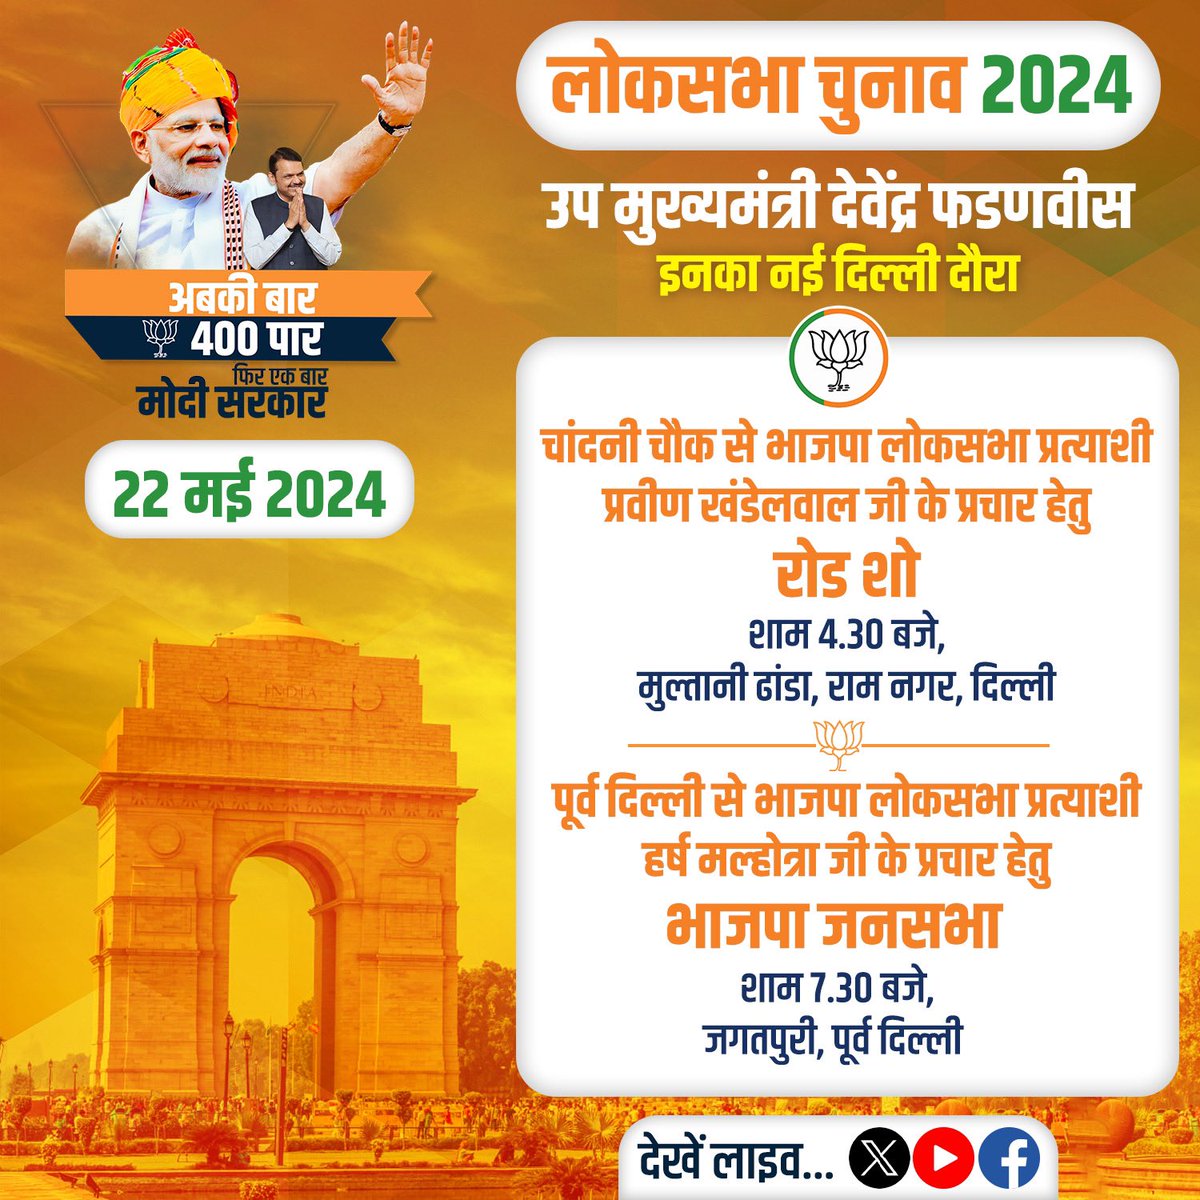 महाराष्ट्र के विकास पुरुष, उप मुख्यमंत्री देवेंद्र फडणवीस इनके आज के कार्यक्रम
(बुधवार, दि. 22 मई 2024)

समय : शाम 4.30 बजे, मुल्तानी ढांडा, राम नगर, दिल्ली
समय : शाम 7.30 बजे, जगतपुरी, पूर्व दिल्ली

@Dev_Fadnavis
#Delhi #BJP #ModiJarooriHai